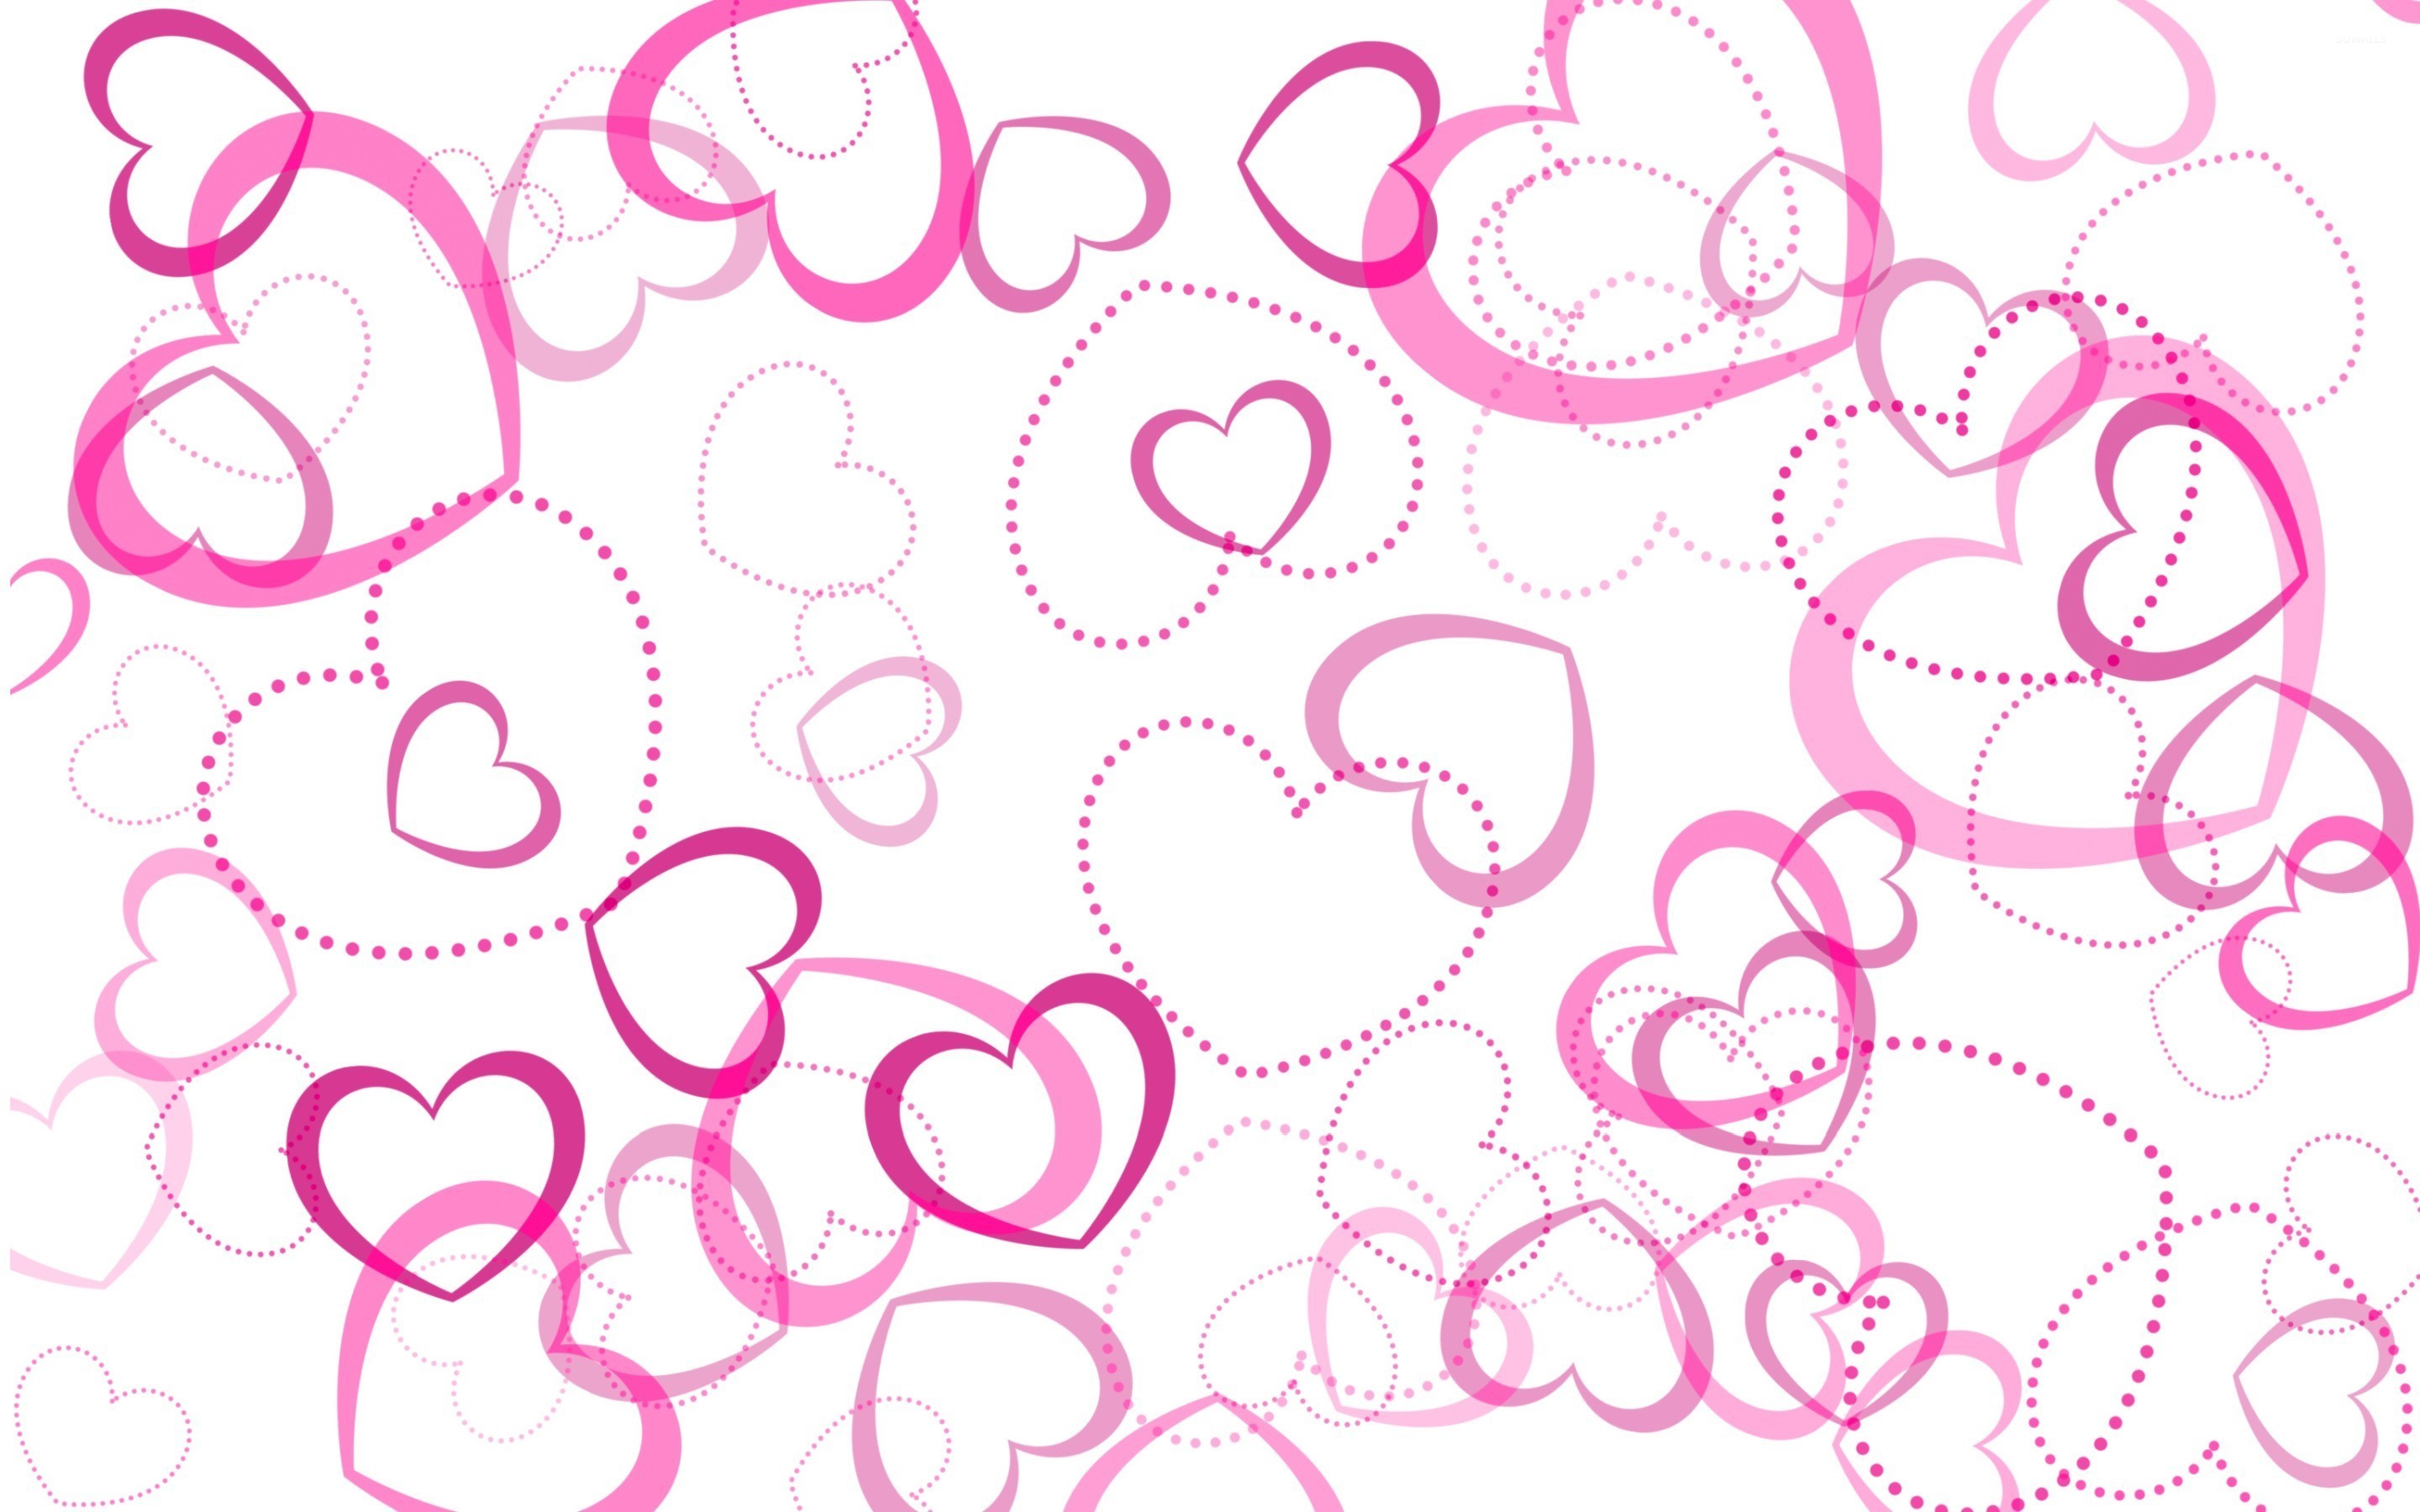 2880x1800 4000x4000 Cute Heart Tumblr Backgrounds Heart8-o.jpg?1373531276 HTML code